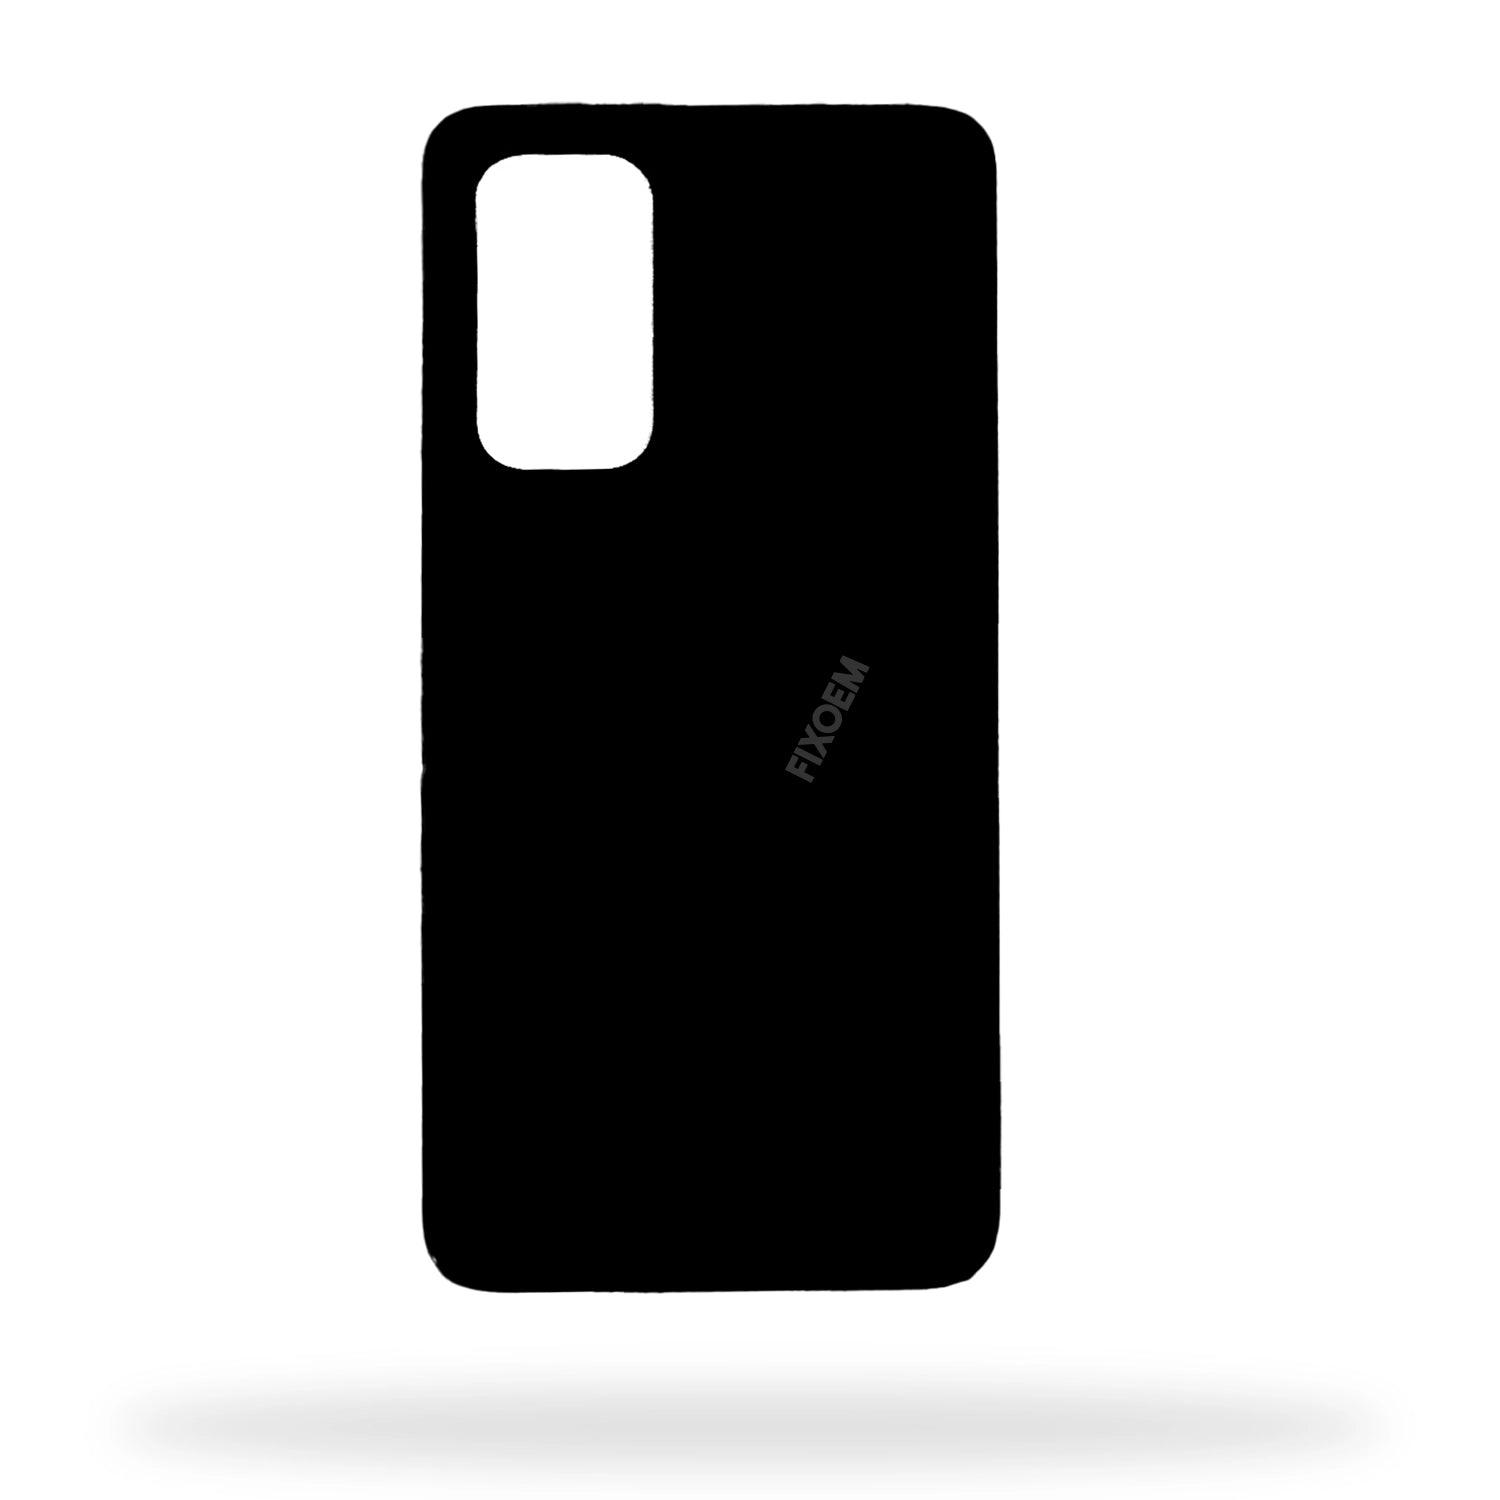 Tapa Trasera Xiaomi Mi 10T Negro M2007J3SY a solo $ 90.00 Refaccion y puestos celulares, refurbish y microelectronica.- FixOEM